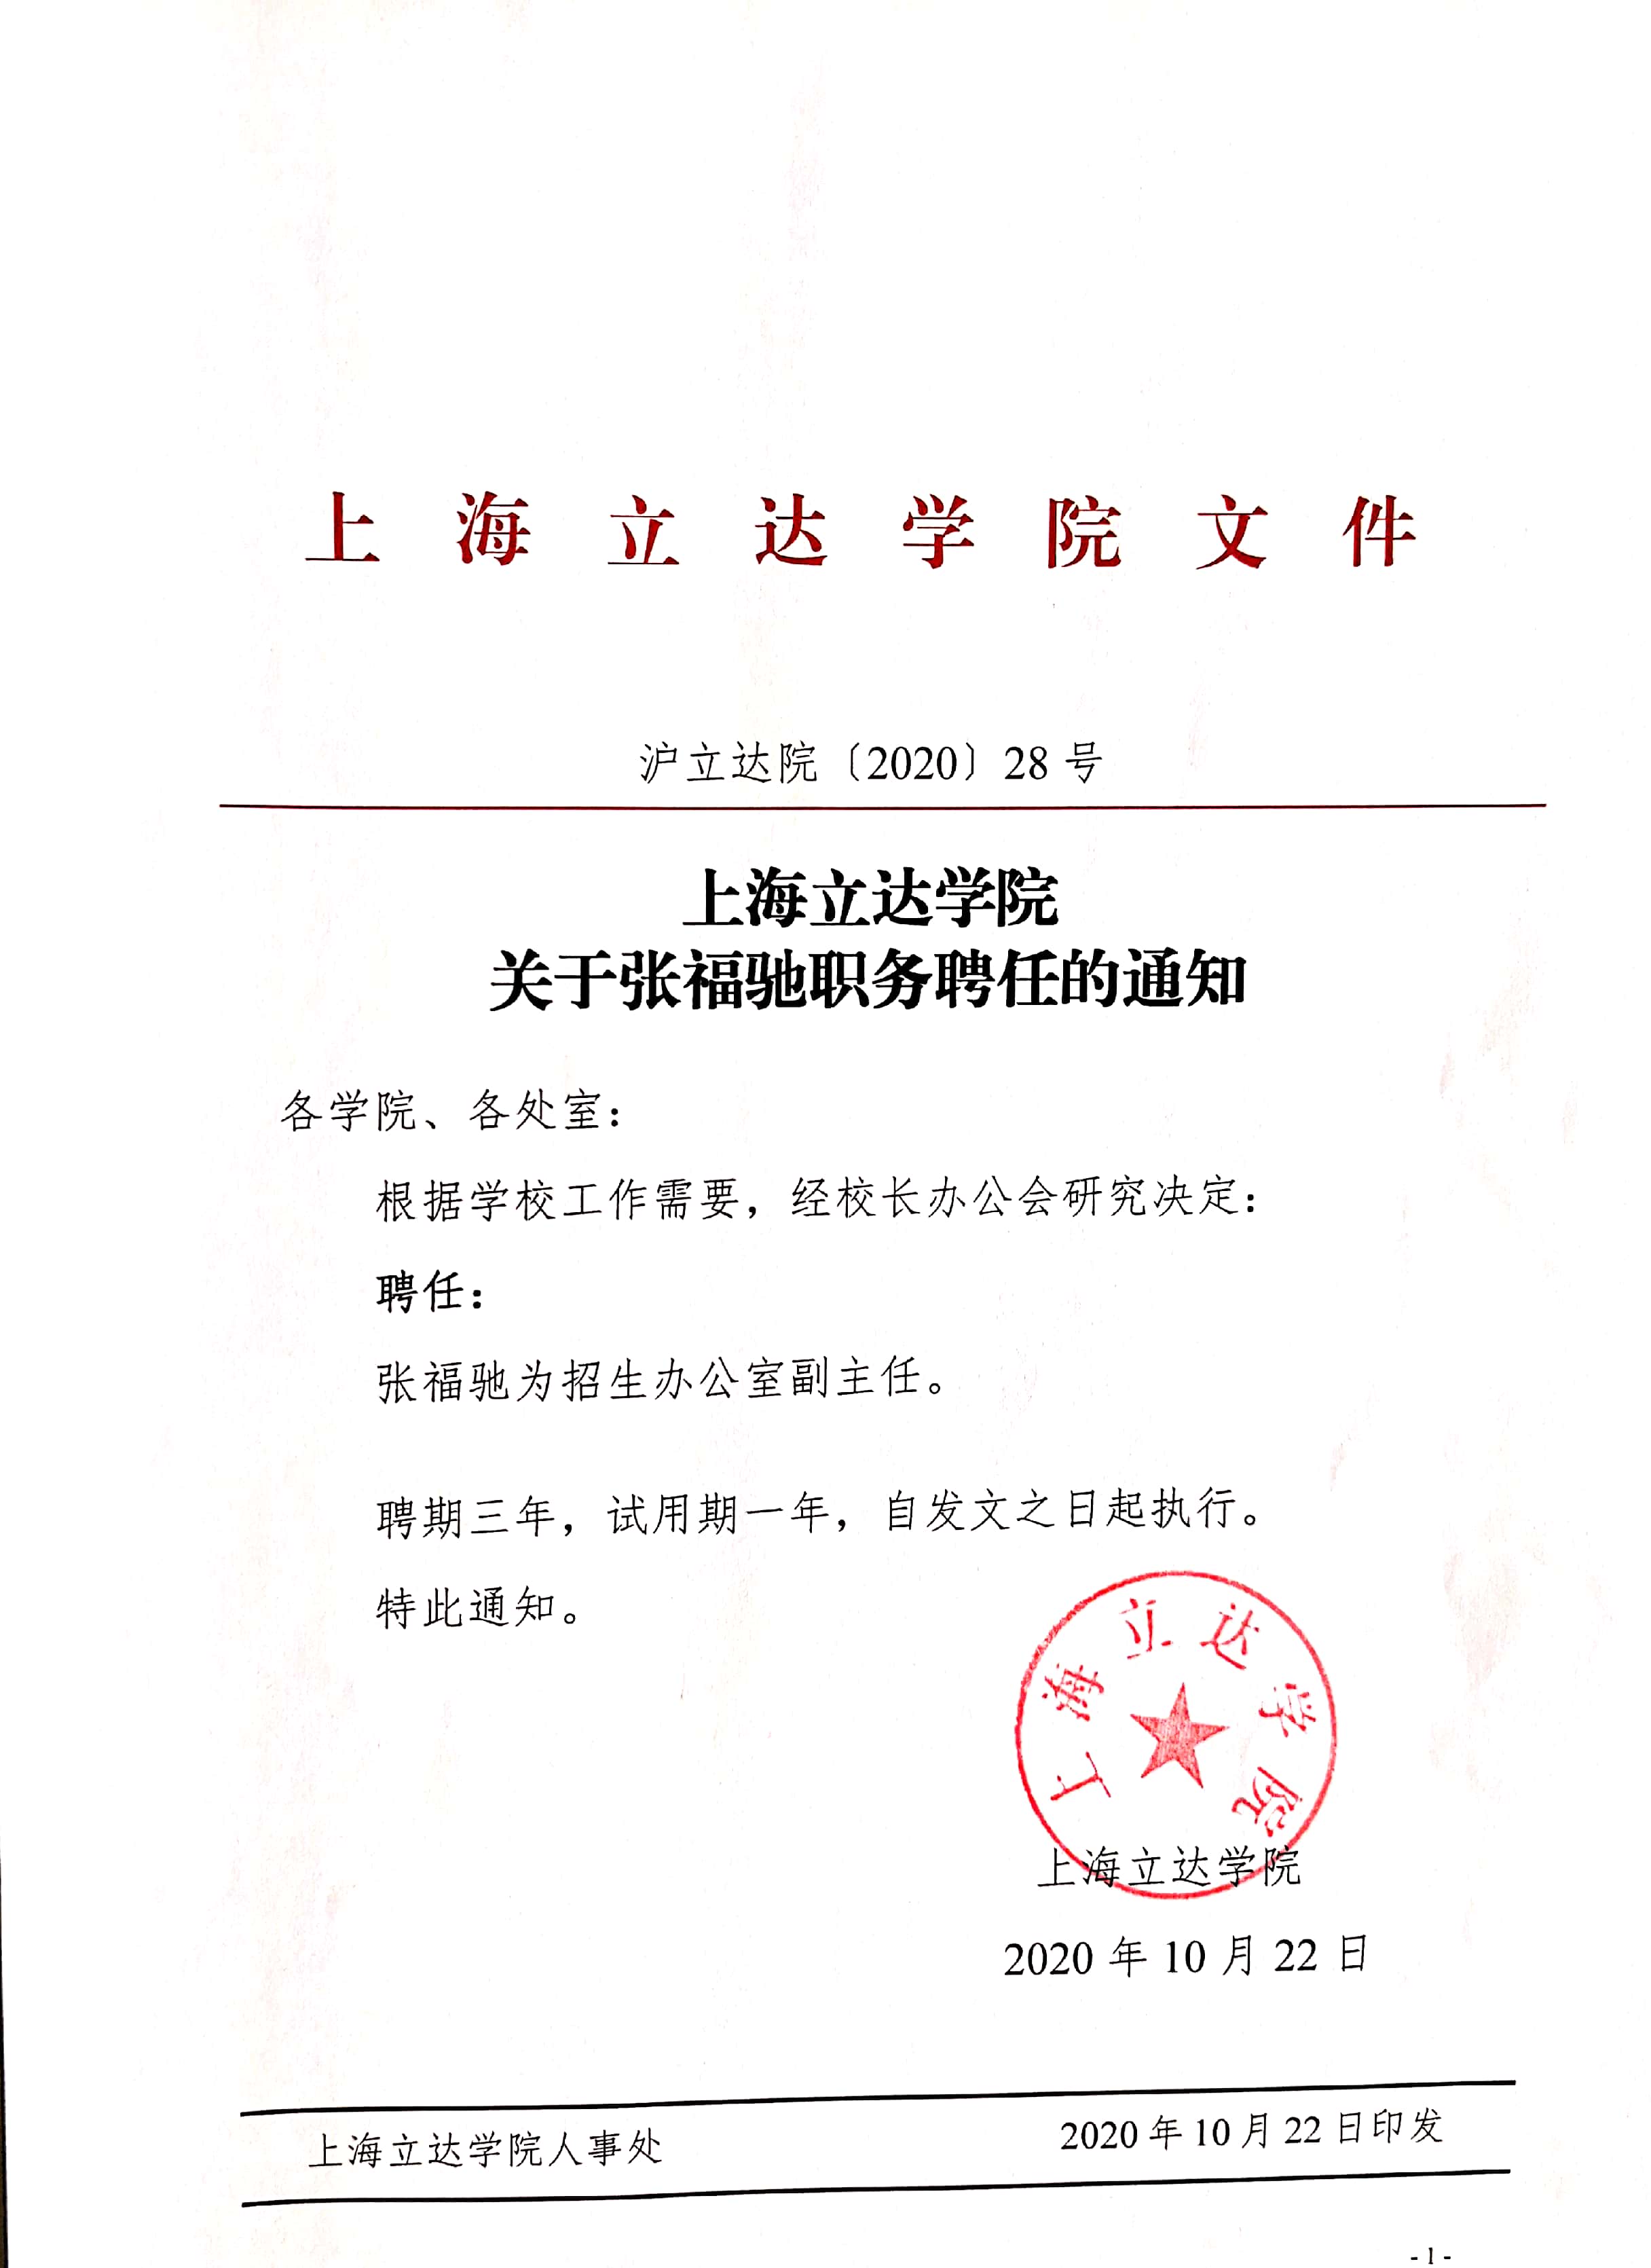 上海立达学院关于张福驰职务聘任的通知